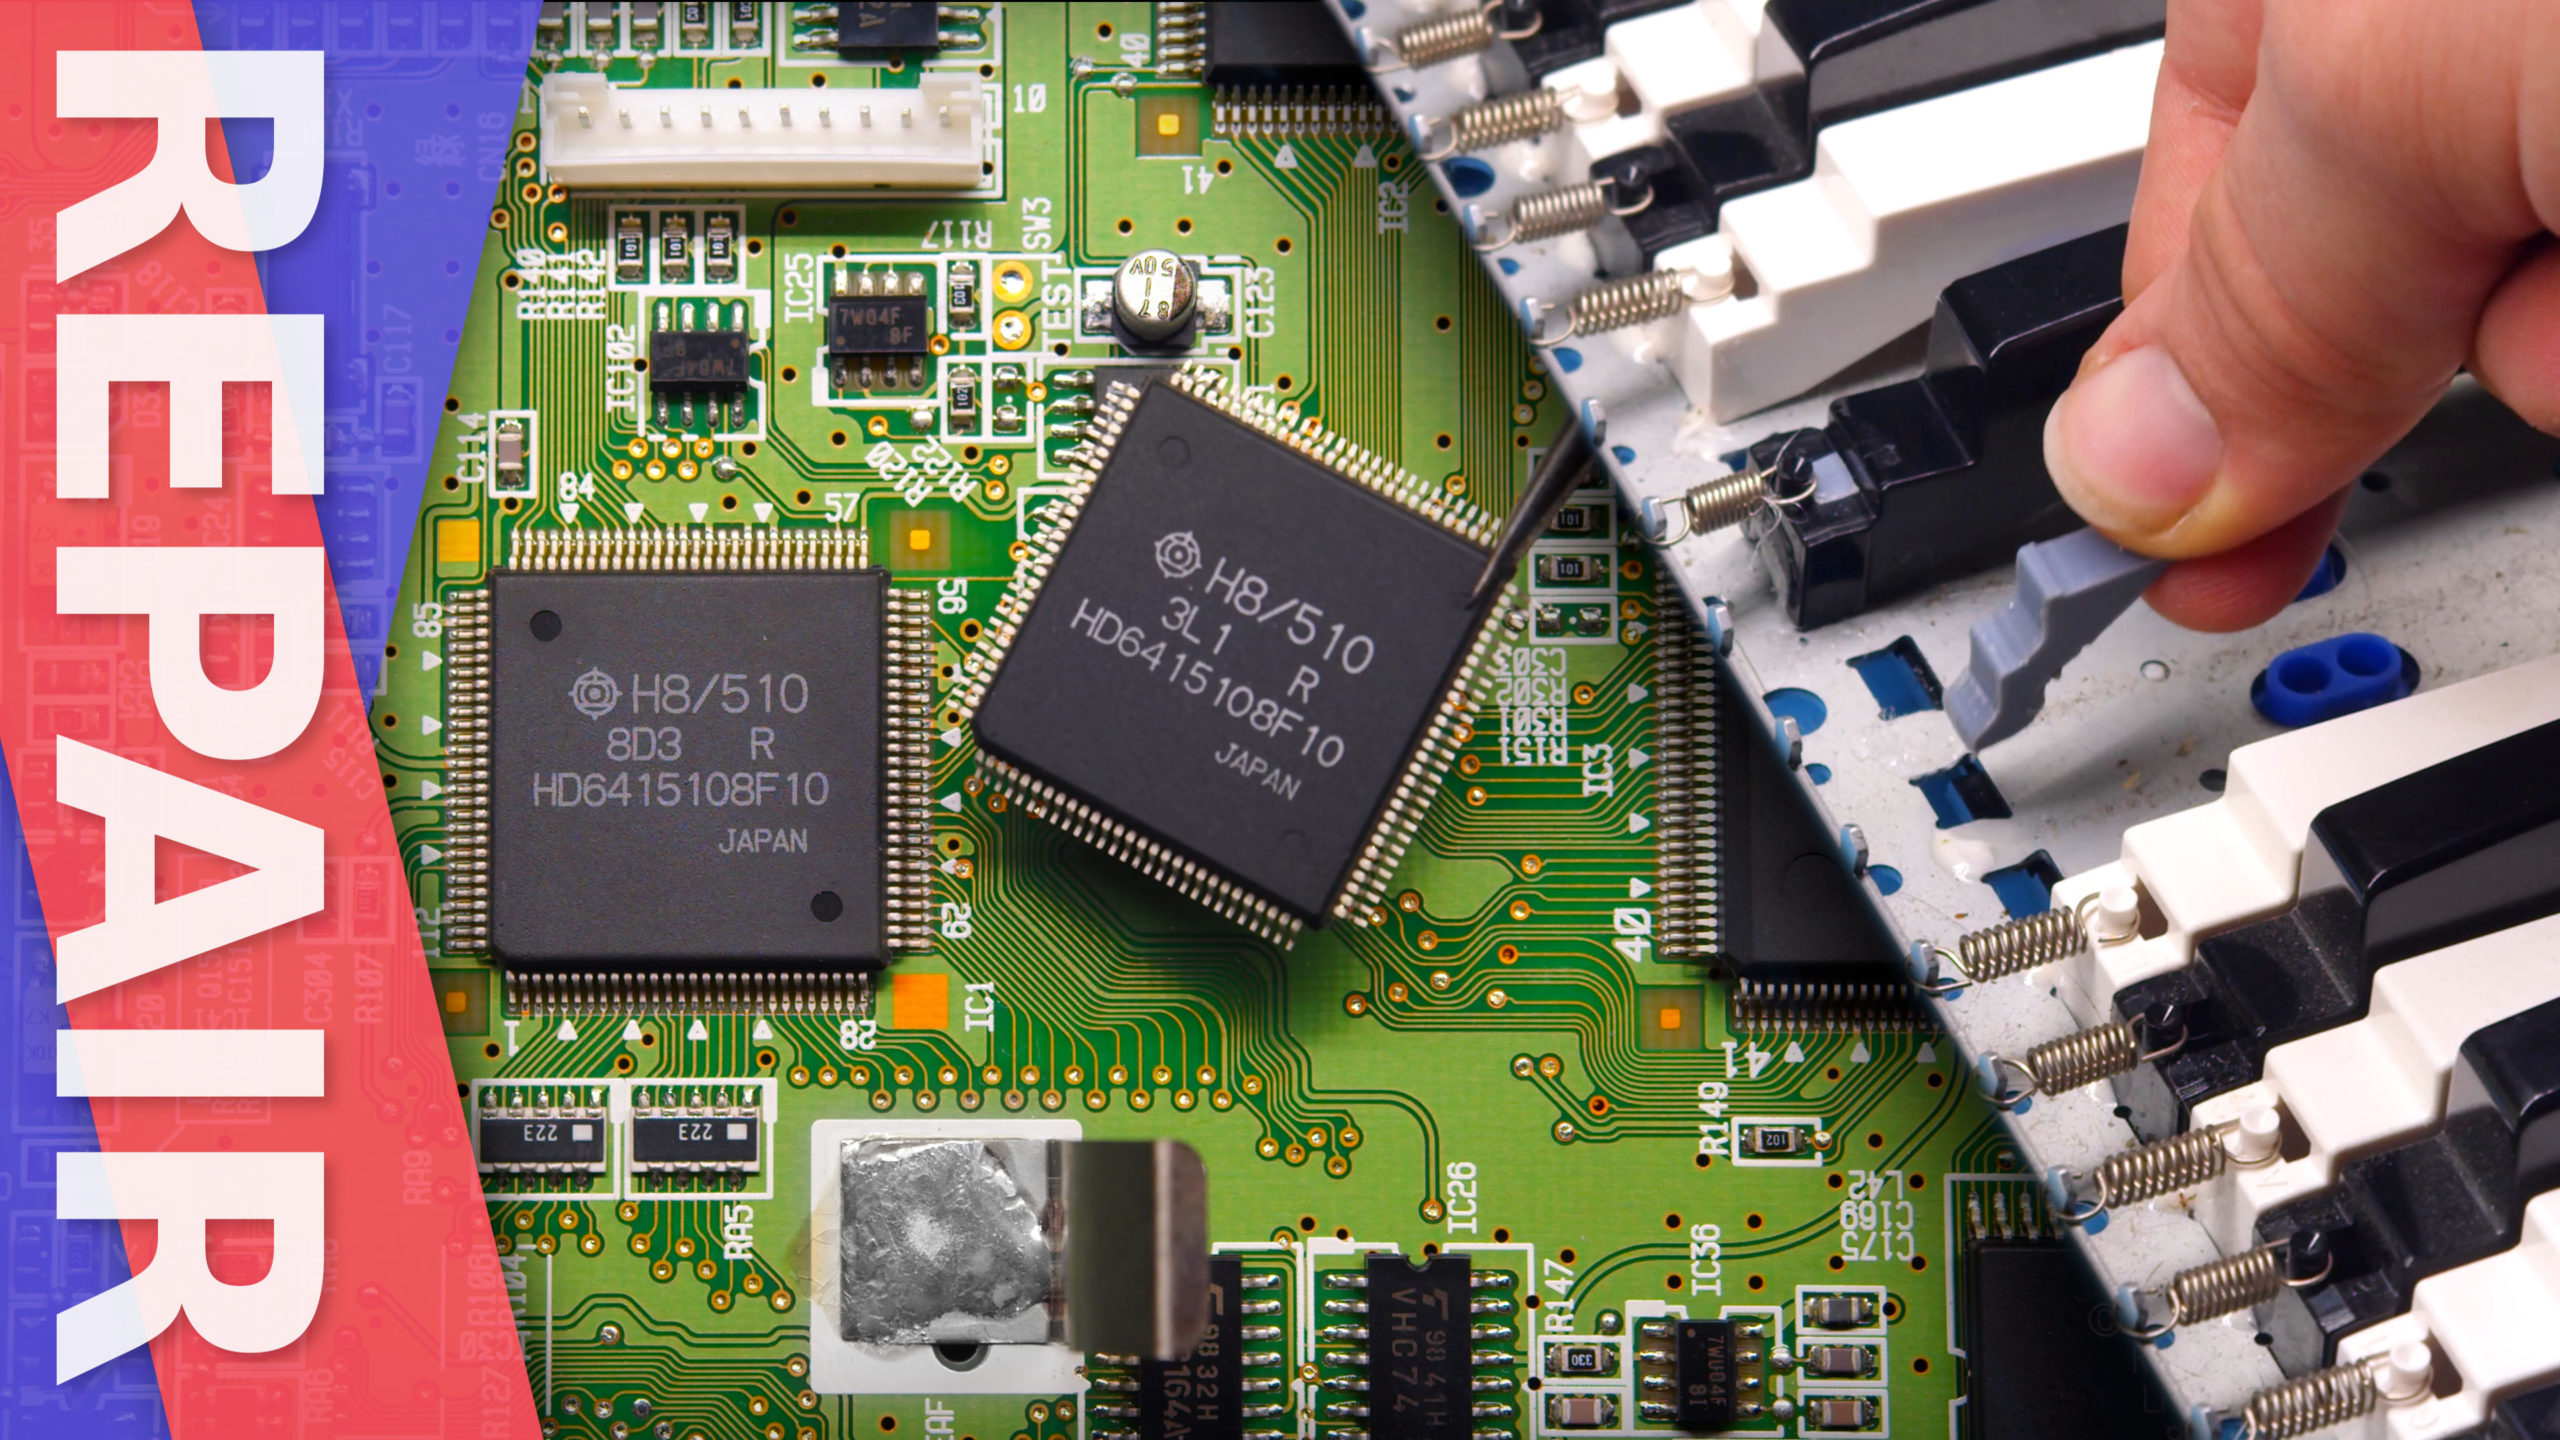 TT Repairs: Roland SK-88 CPU Replacement and Key Rebuild